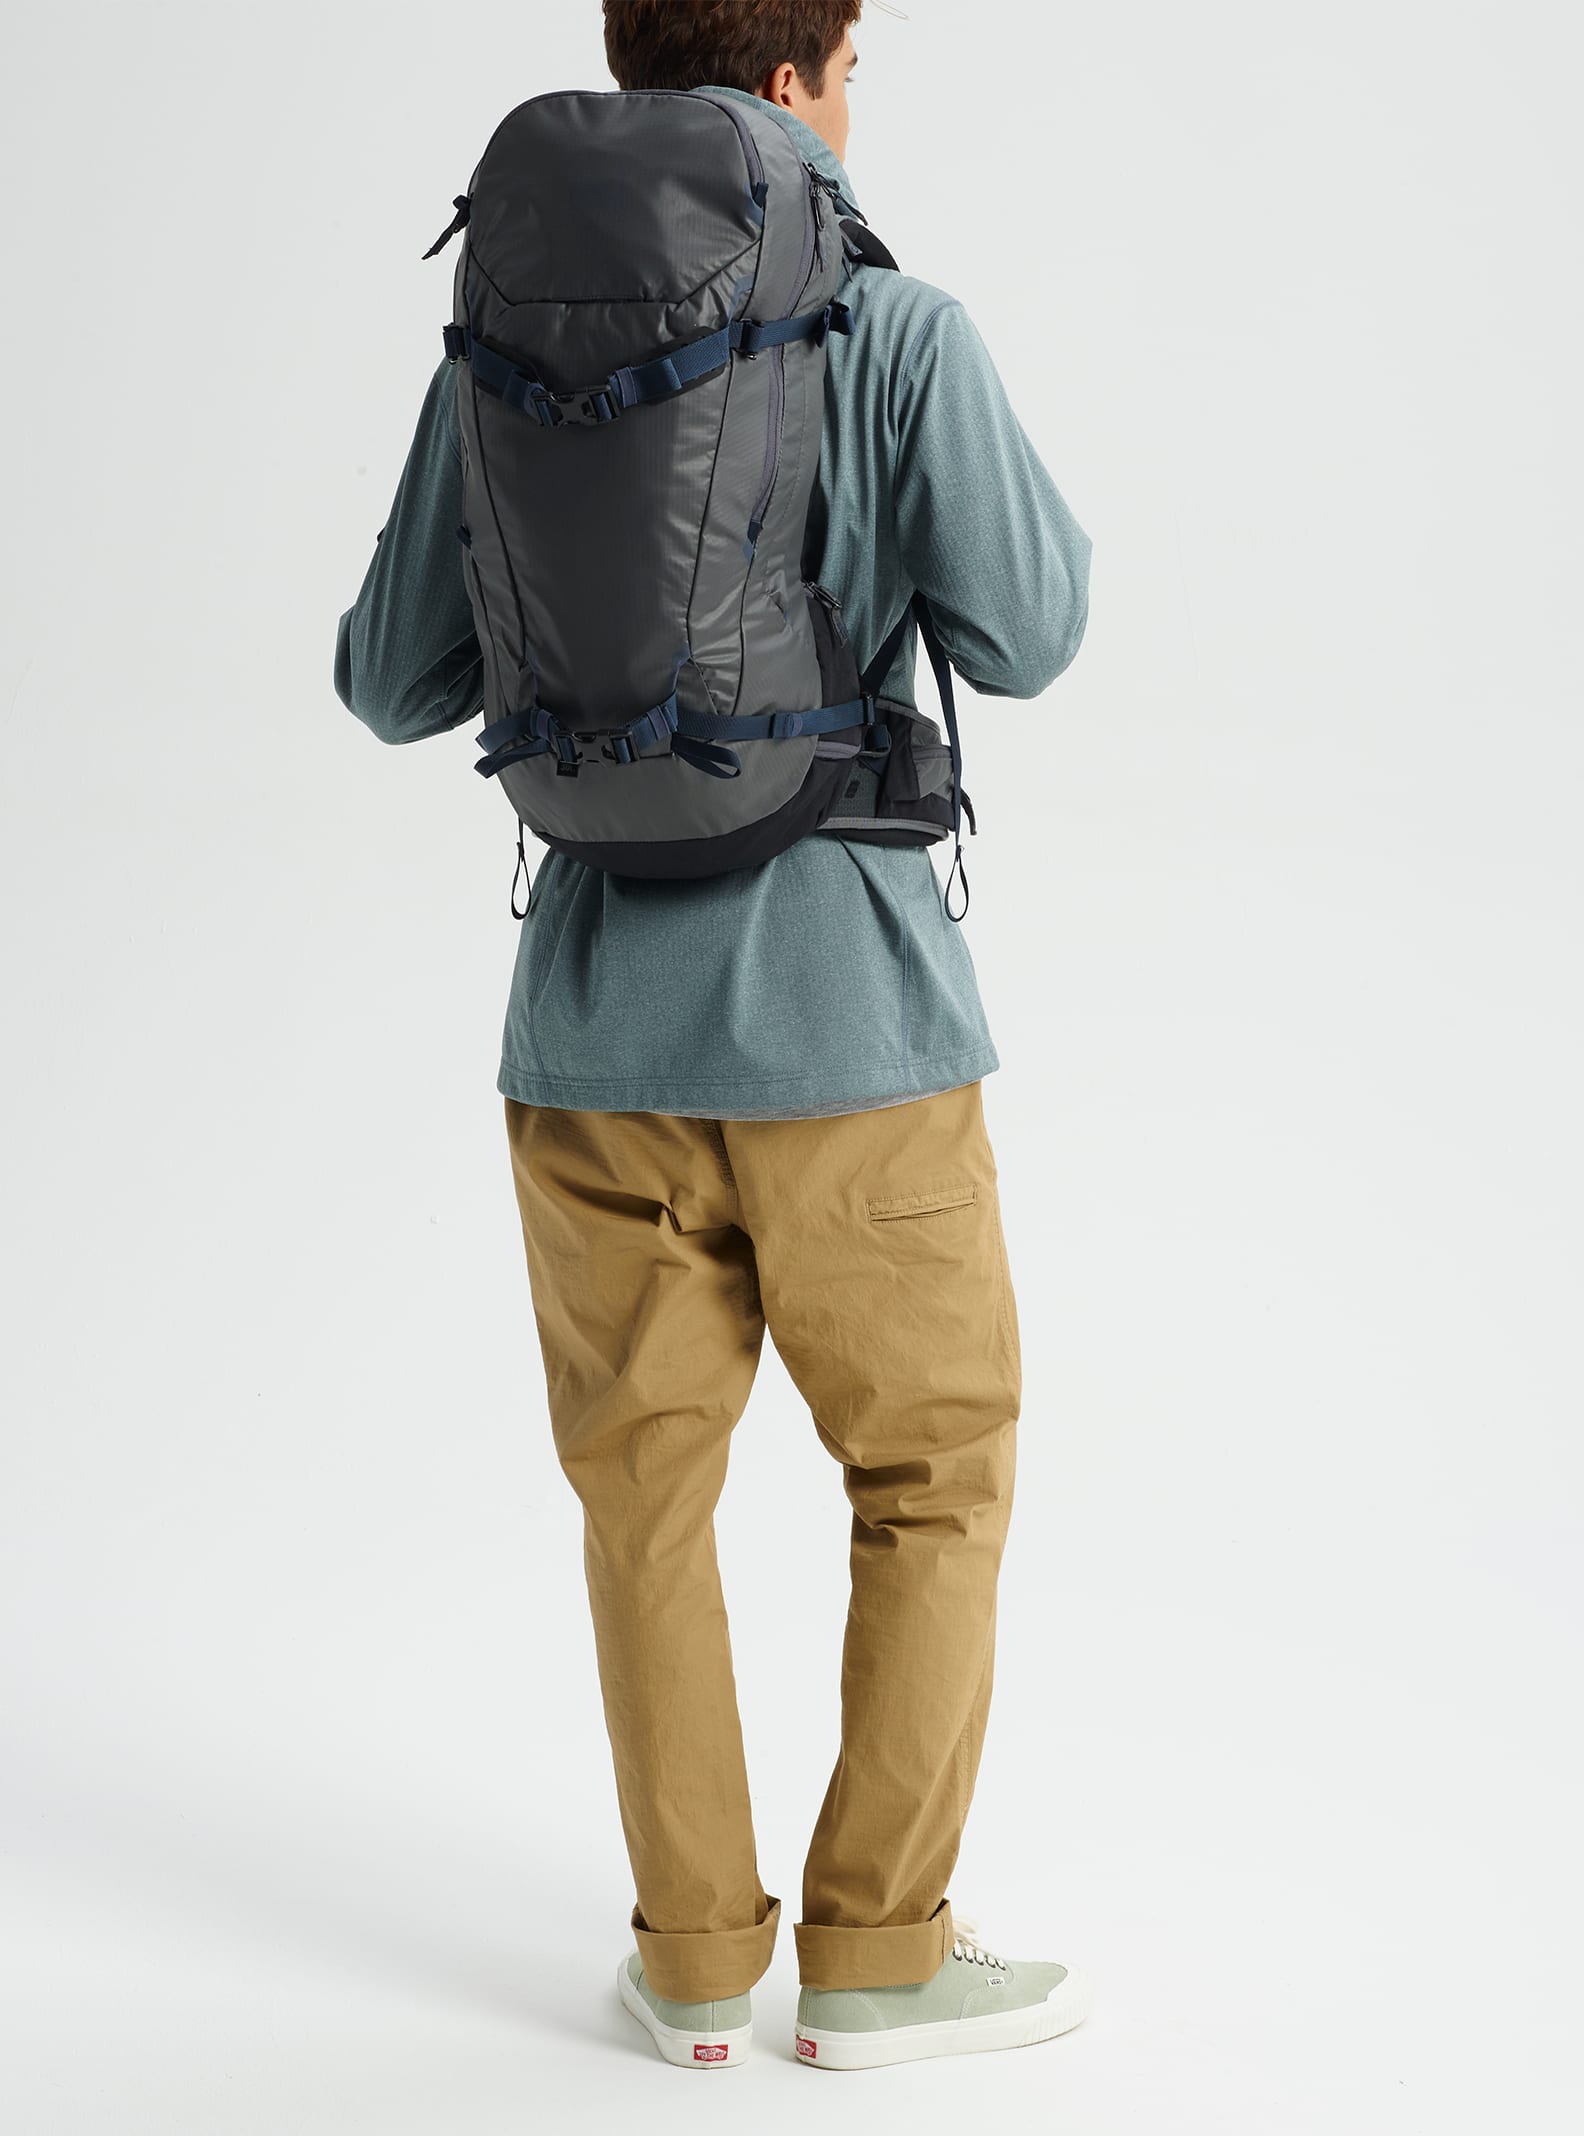 Burton [ak] Incline 30L Backpack | Burton.com Spring 2021 CA